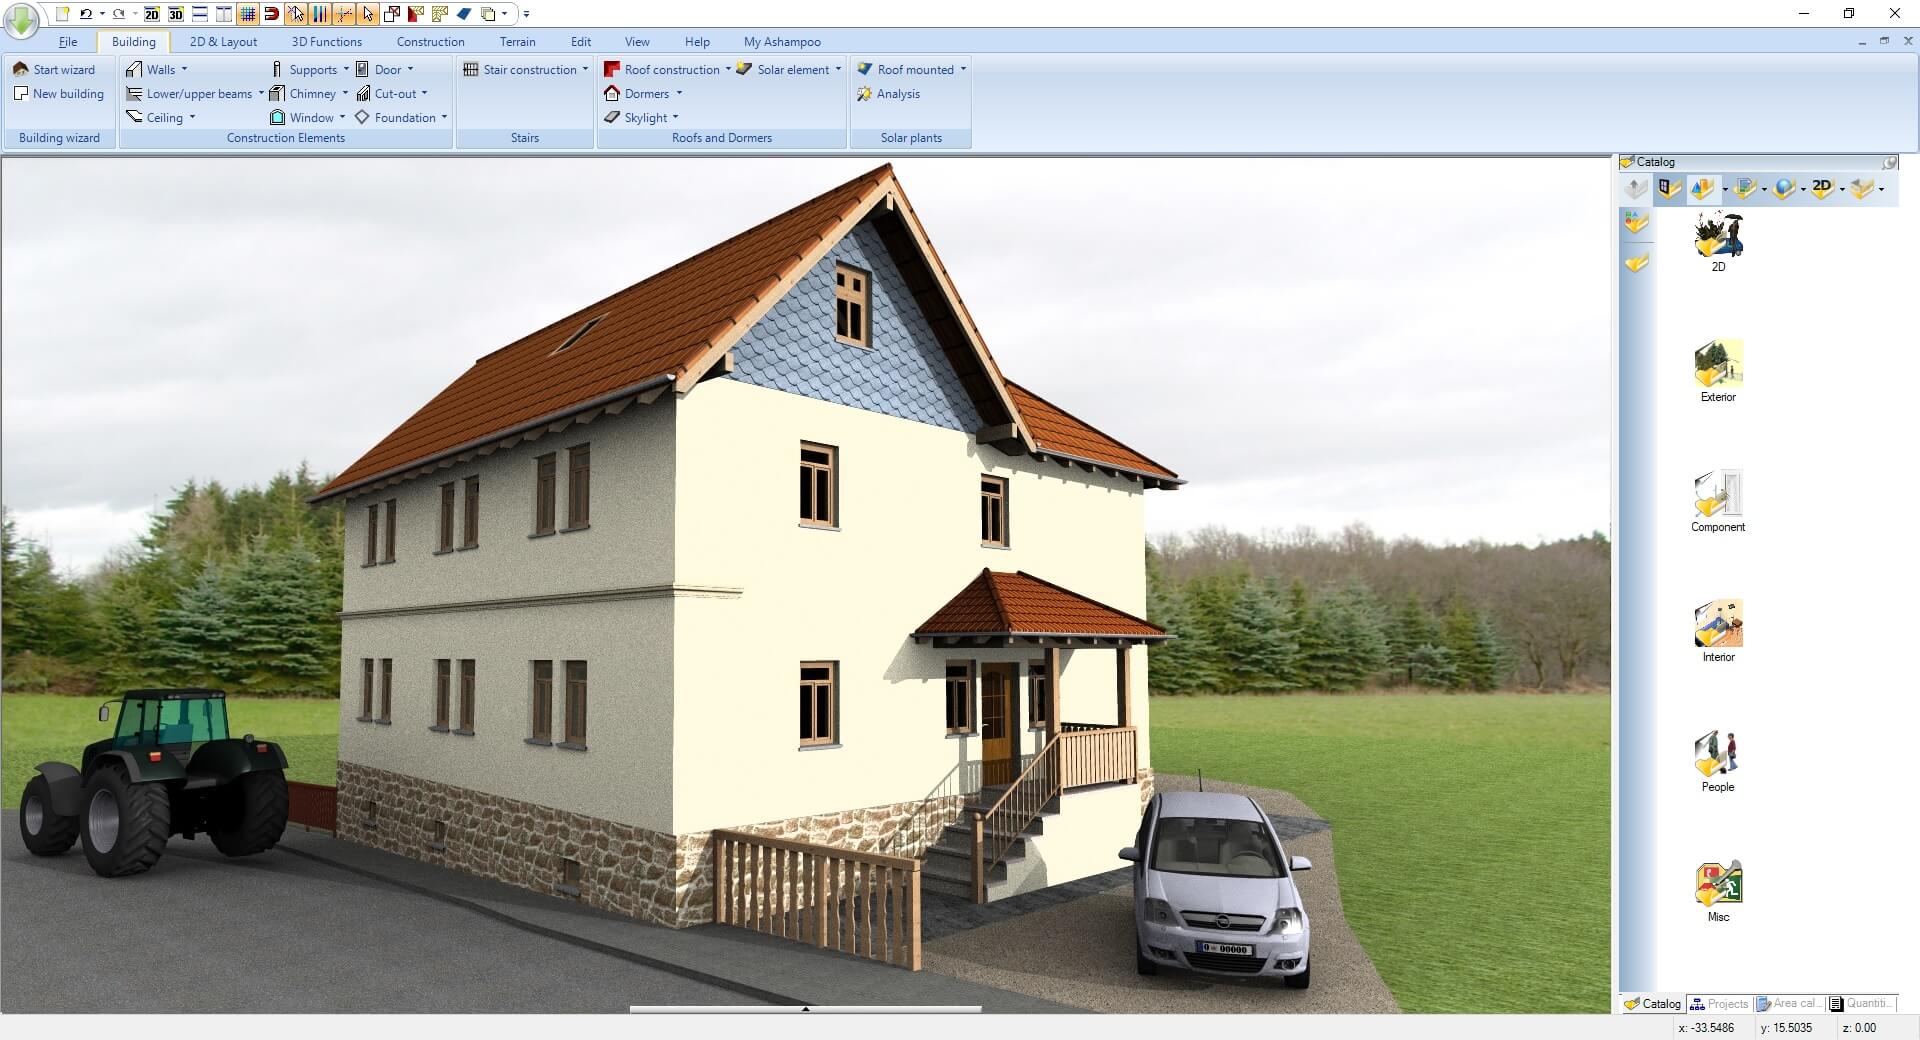 Ashampoo® 3D CAD Architecture 10